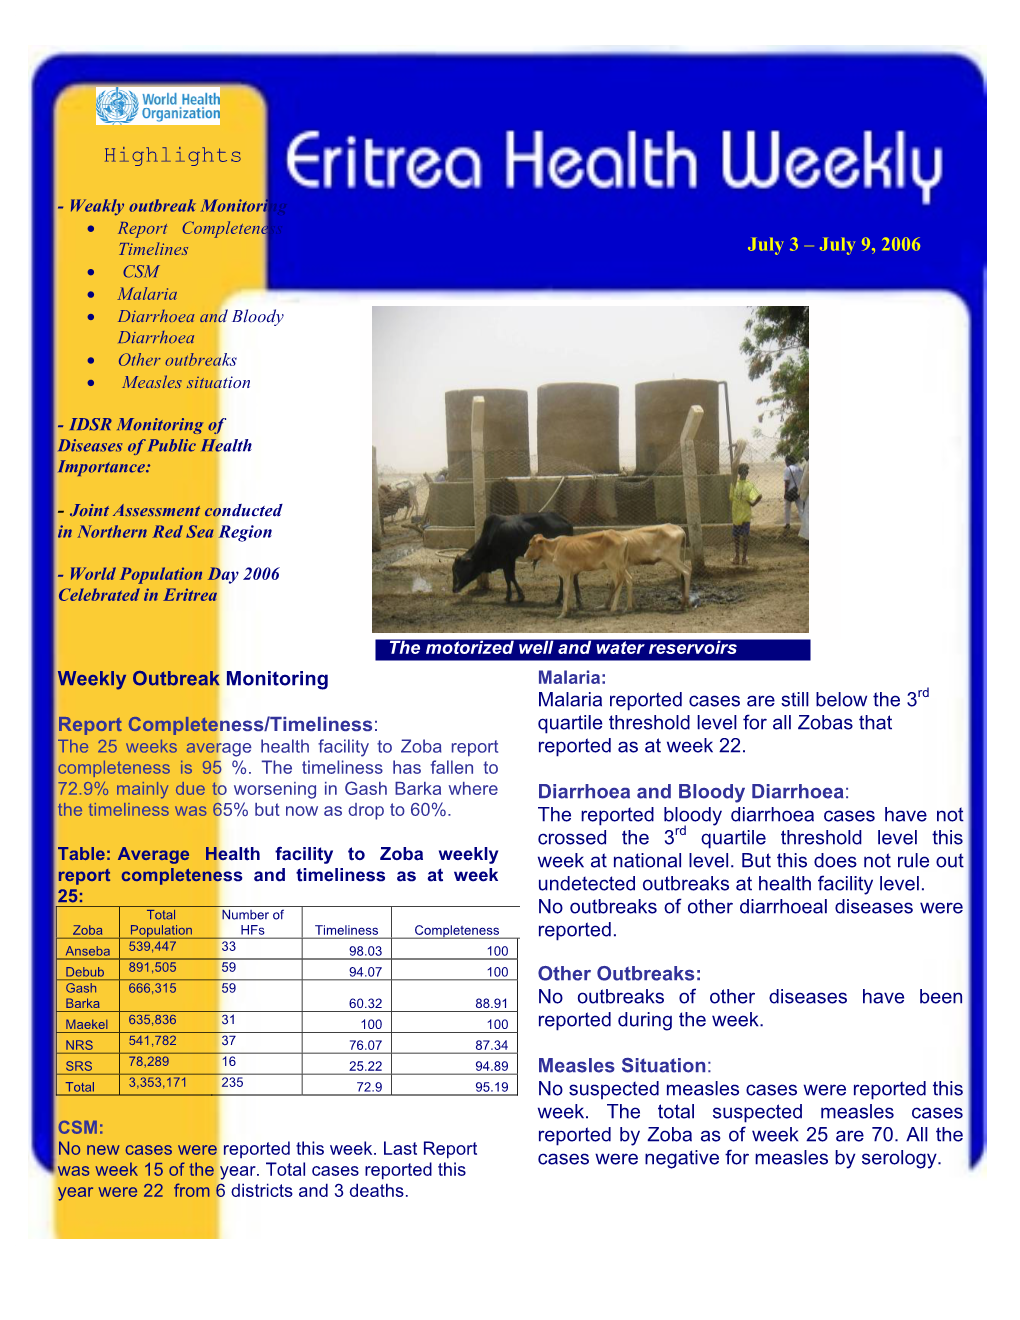 Meningococcal Meningitis Situation in Eritrea